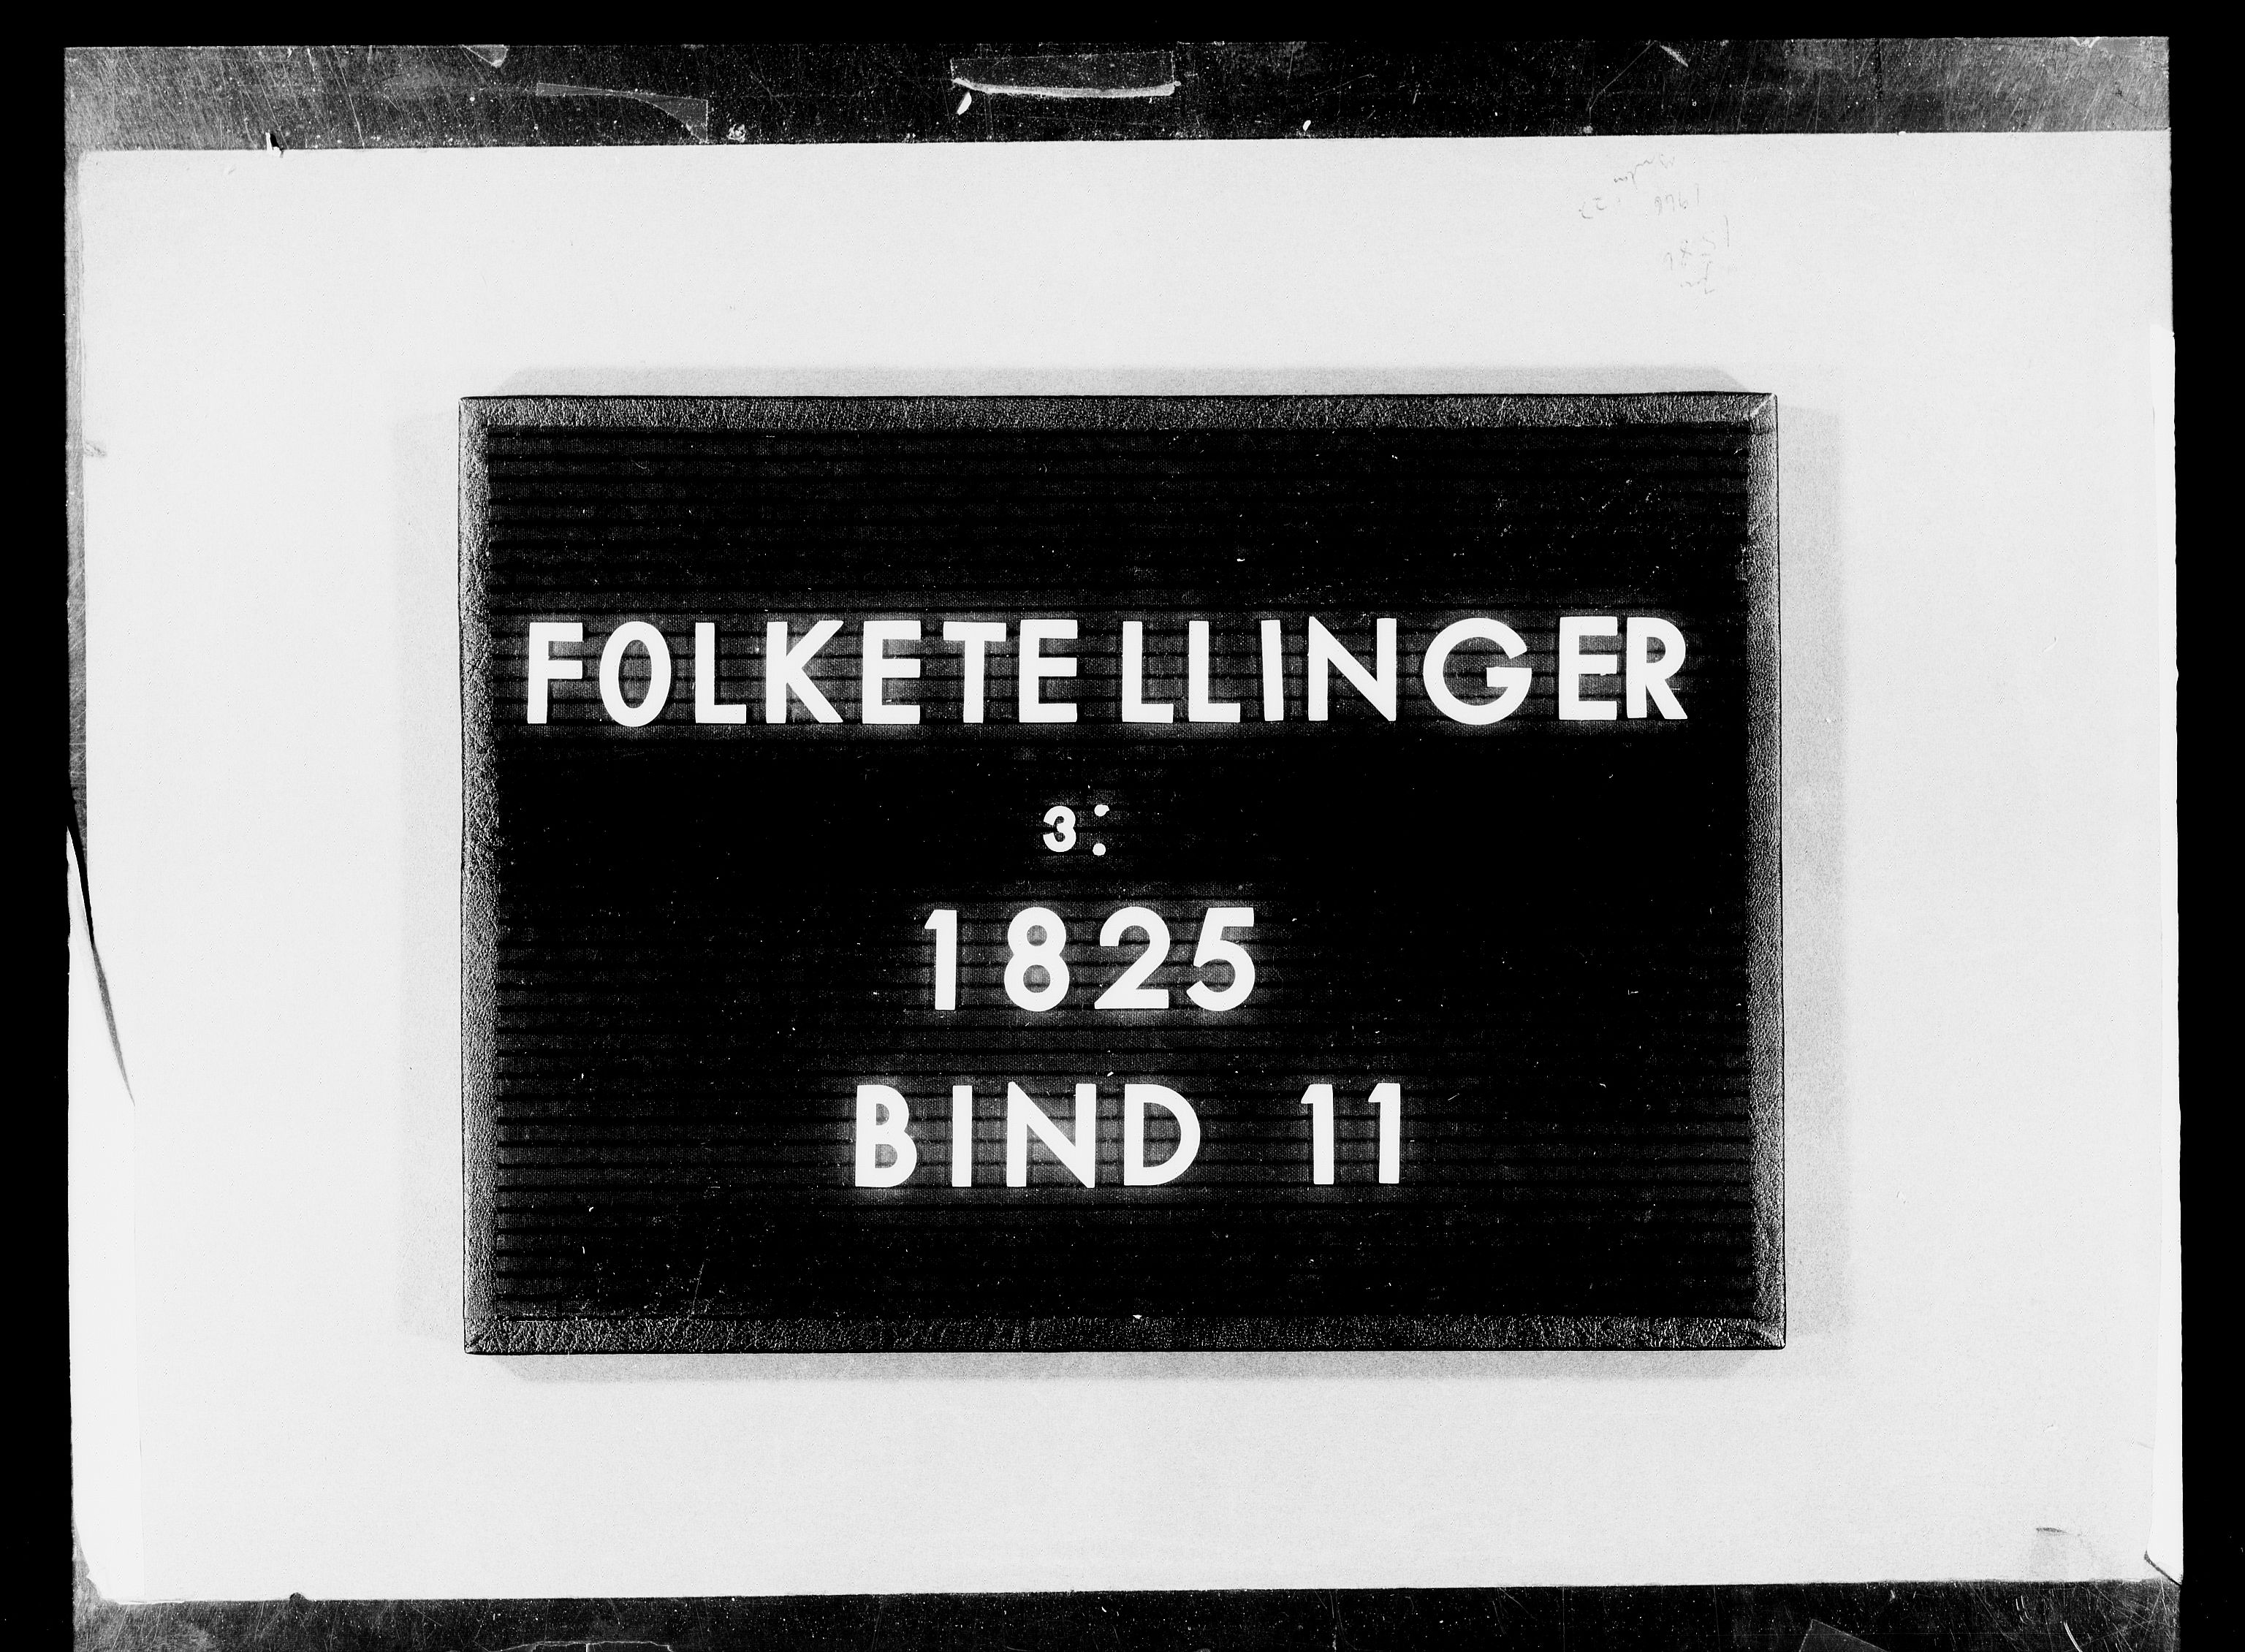 RA, Folketellingen 1825, bind 11: Lister og Mandal amt, 1825